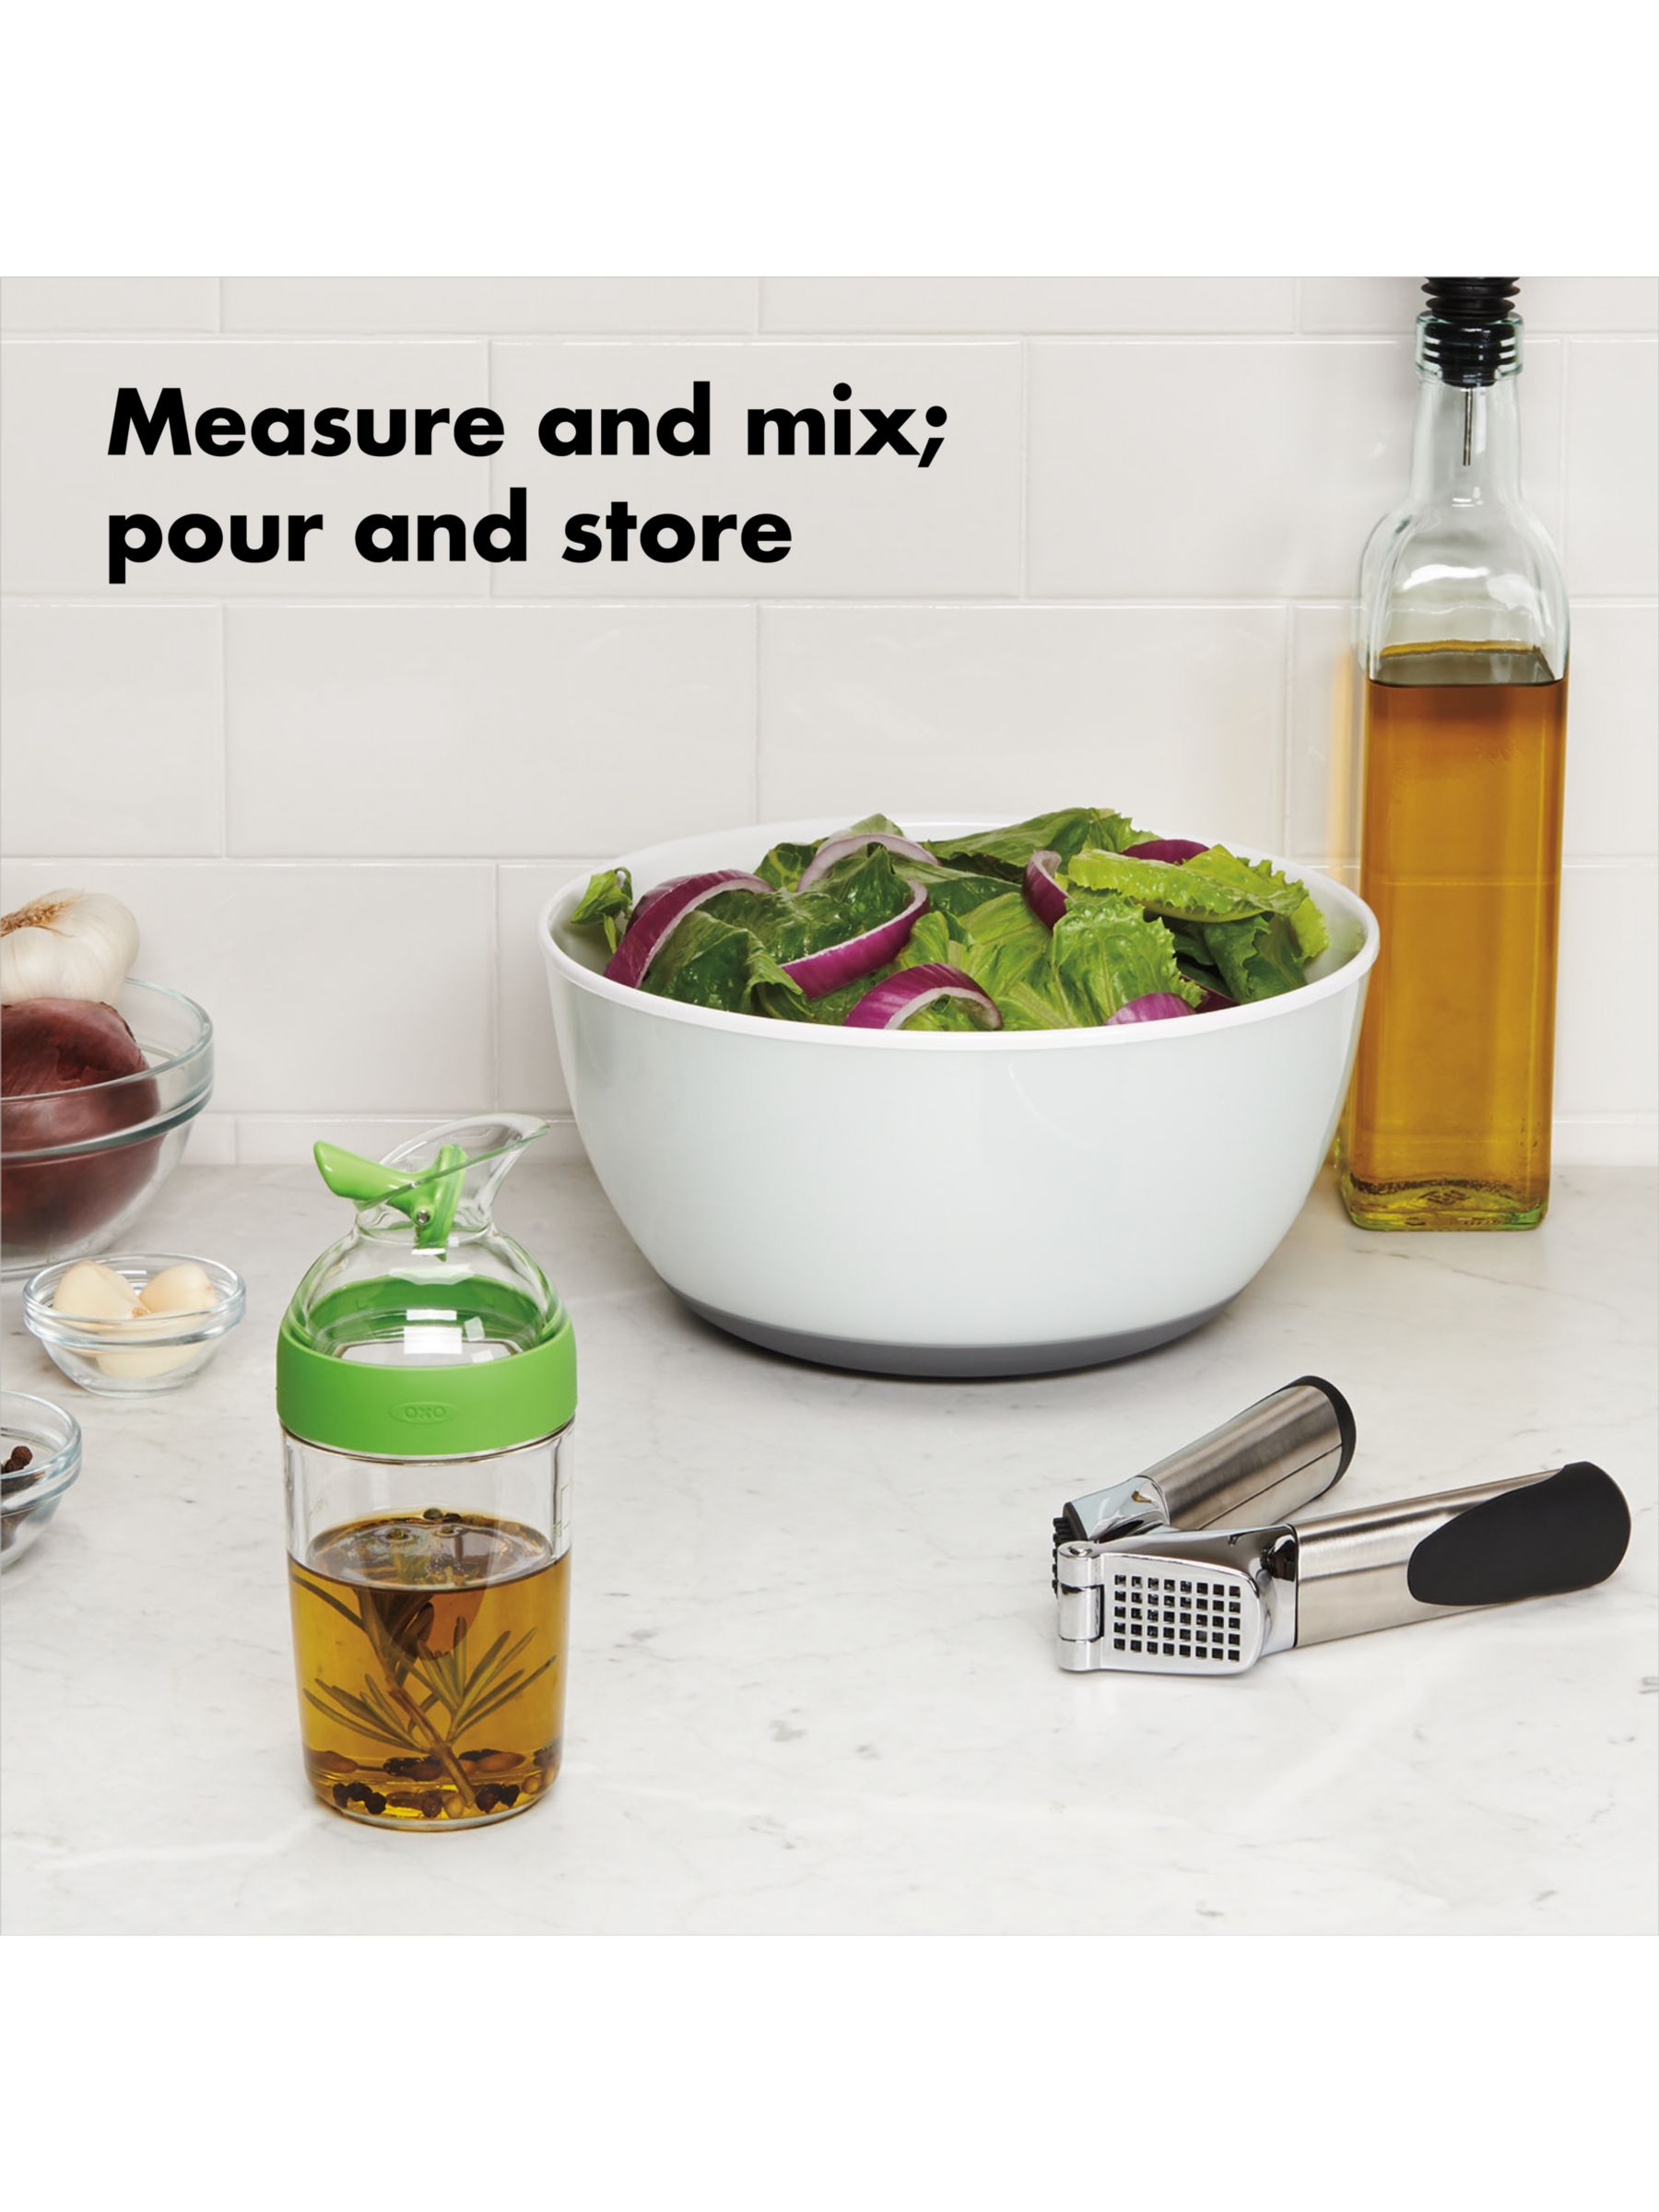 OXO Good Grips Little Salad Dressing Shaker - Black, Small